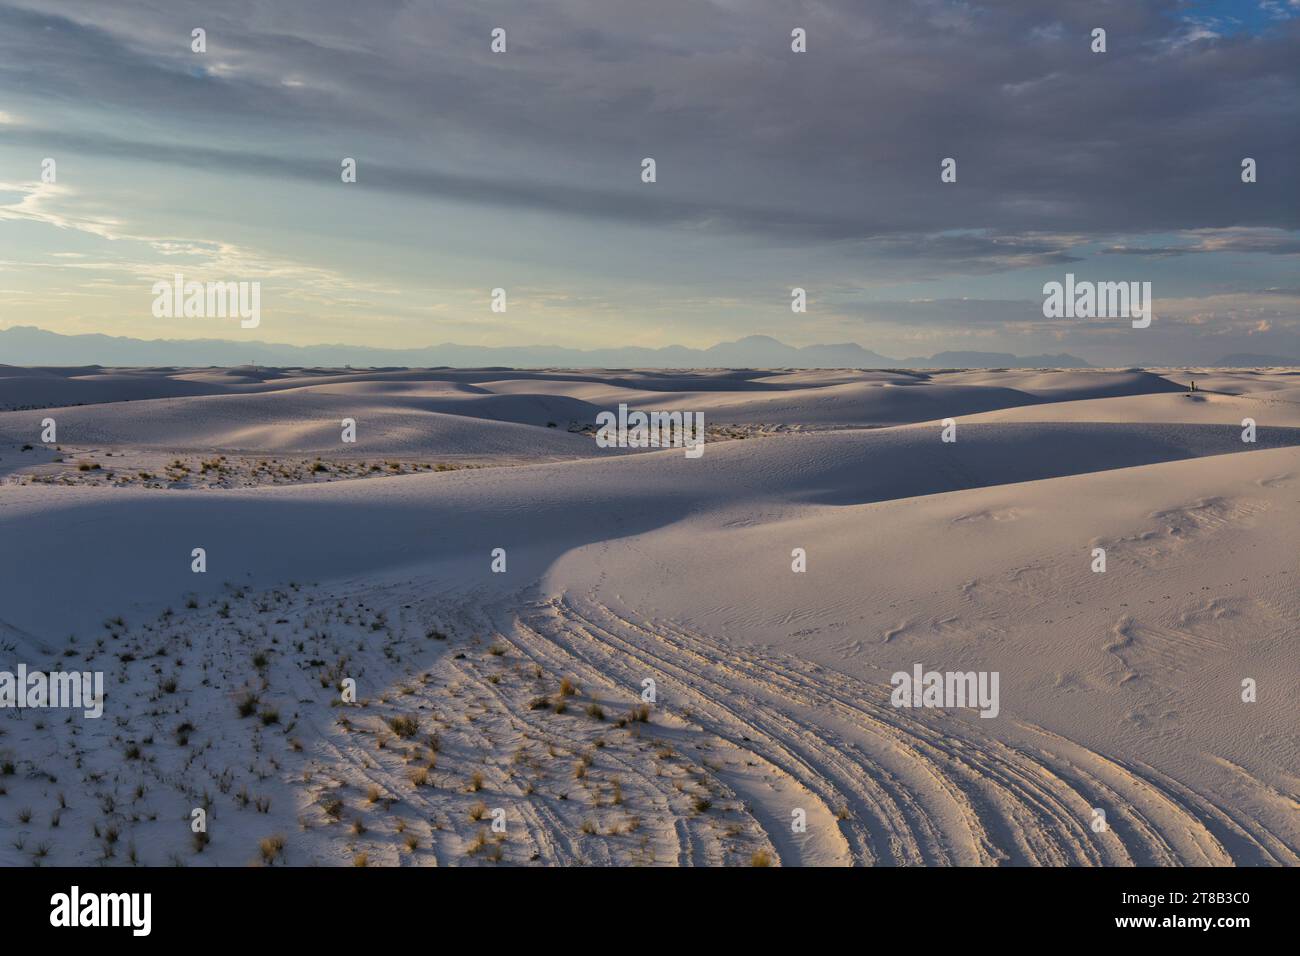 Innalzandosi dal cuore del bacino di Tularosa è una delle più grandi meraviglie naturali del mondo: Le scintillanti sabbie bianche del New Mexico. Foto Stock